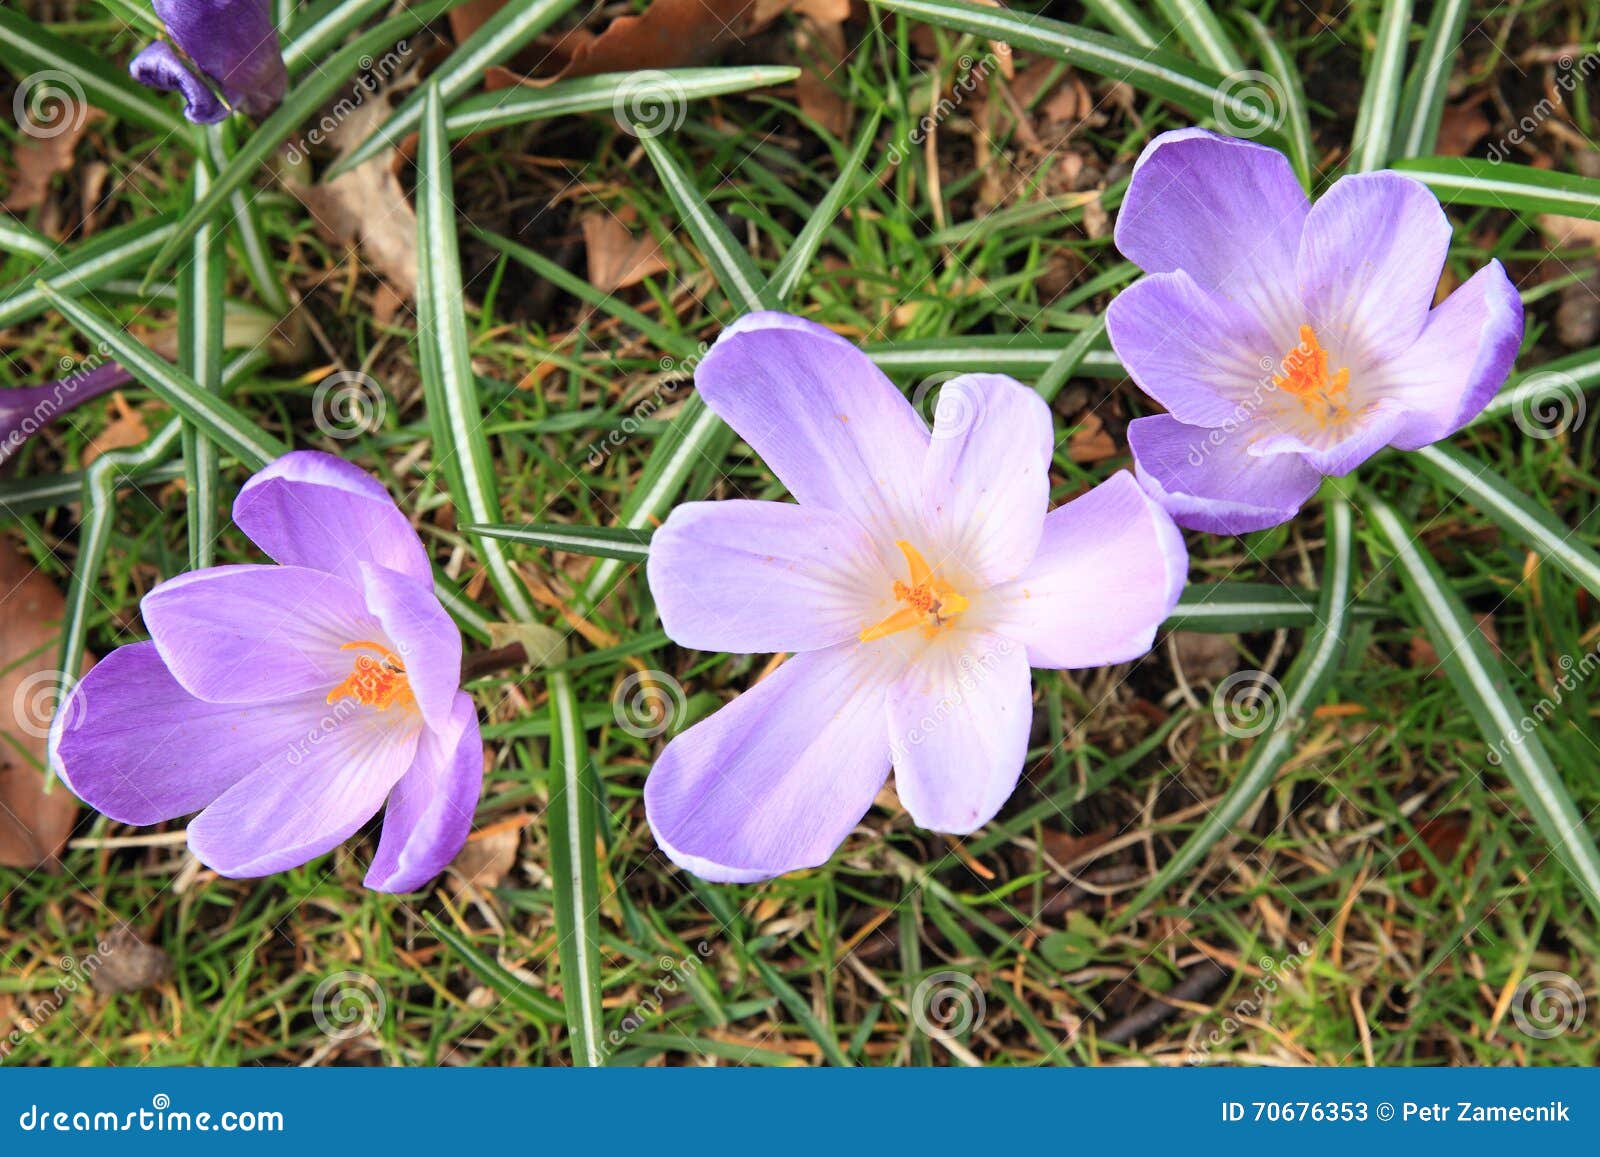 lila flowers - saffron